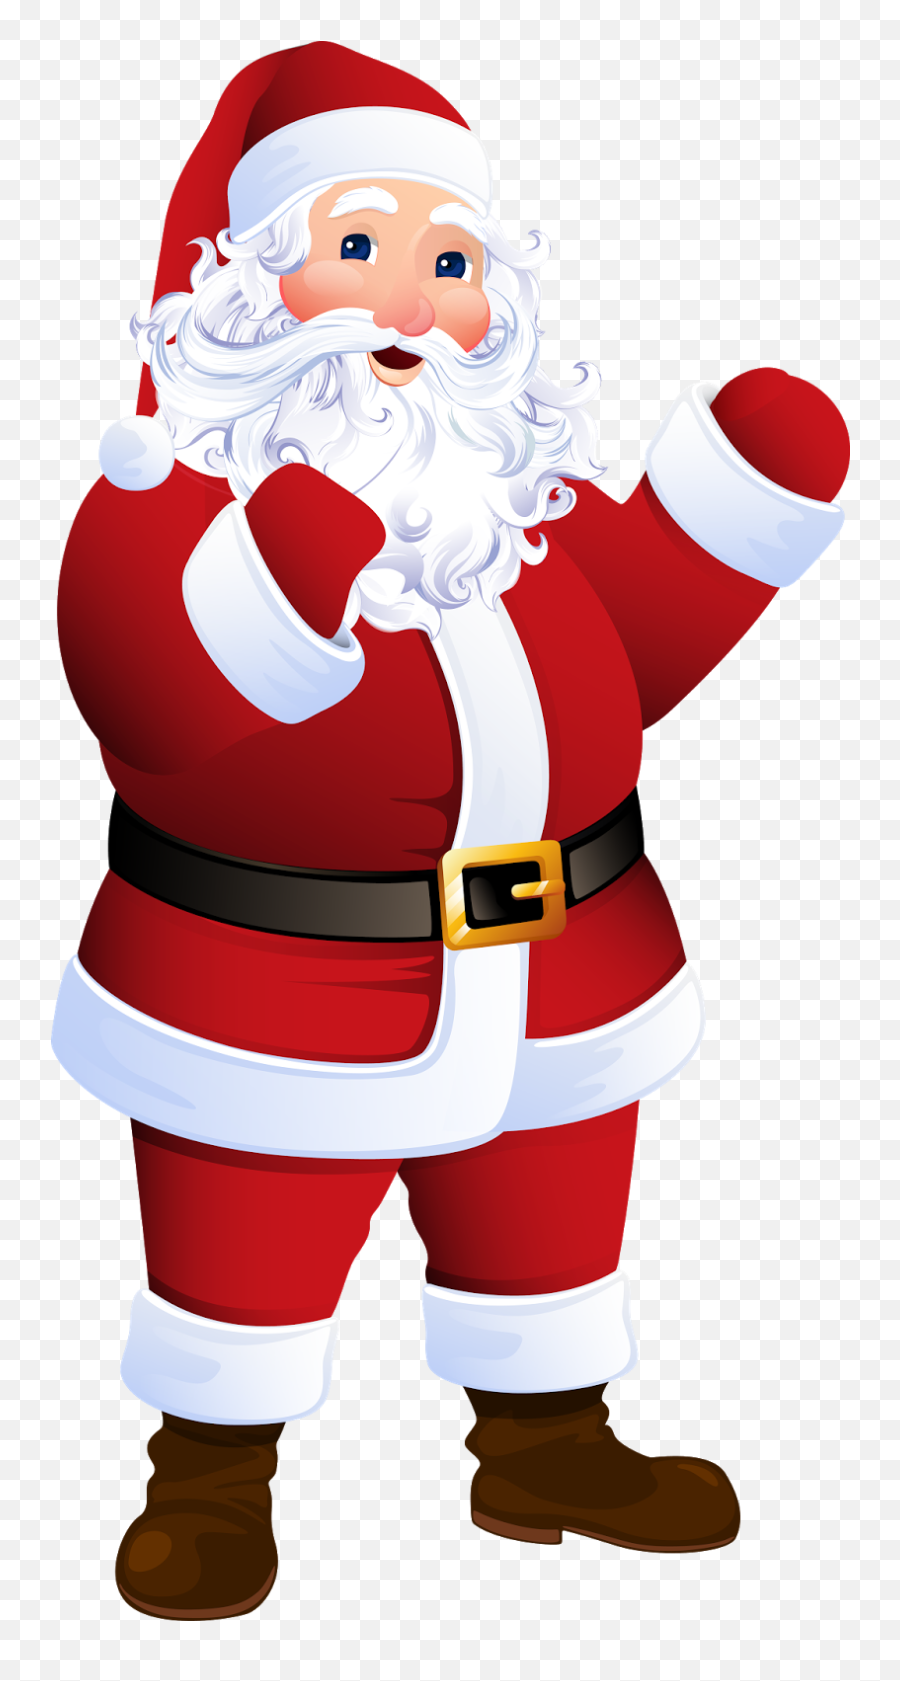 52 Ideias De Natal Desenho De Natal Imagens De Papai Noel Emoji,Santa Claus Emoji Outlook